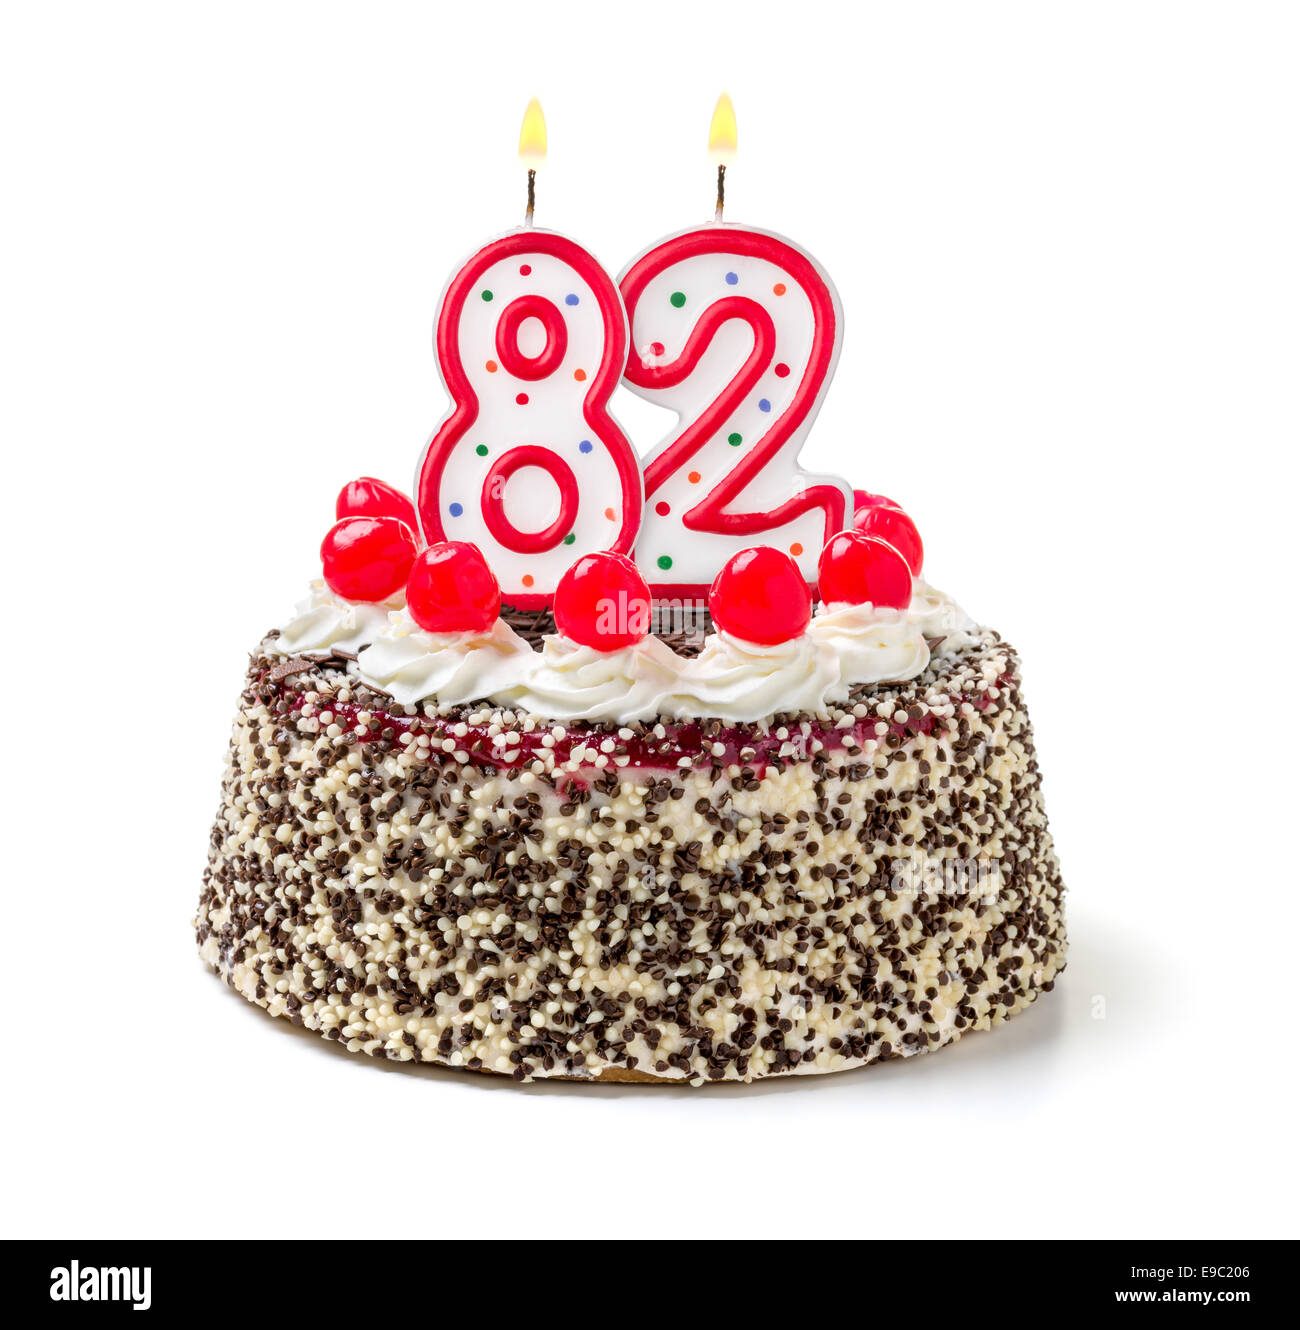 birthday-cake-candles-number-82-fotograf-as-e-im-genes-de-alta